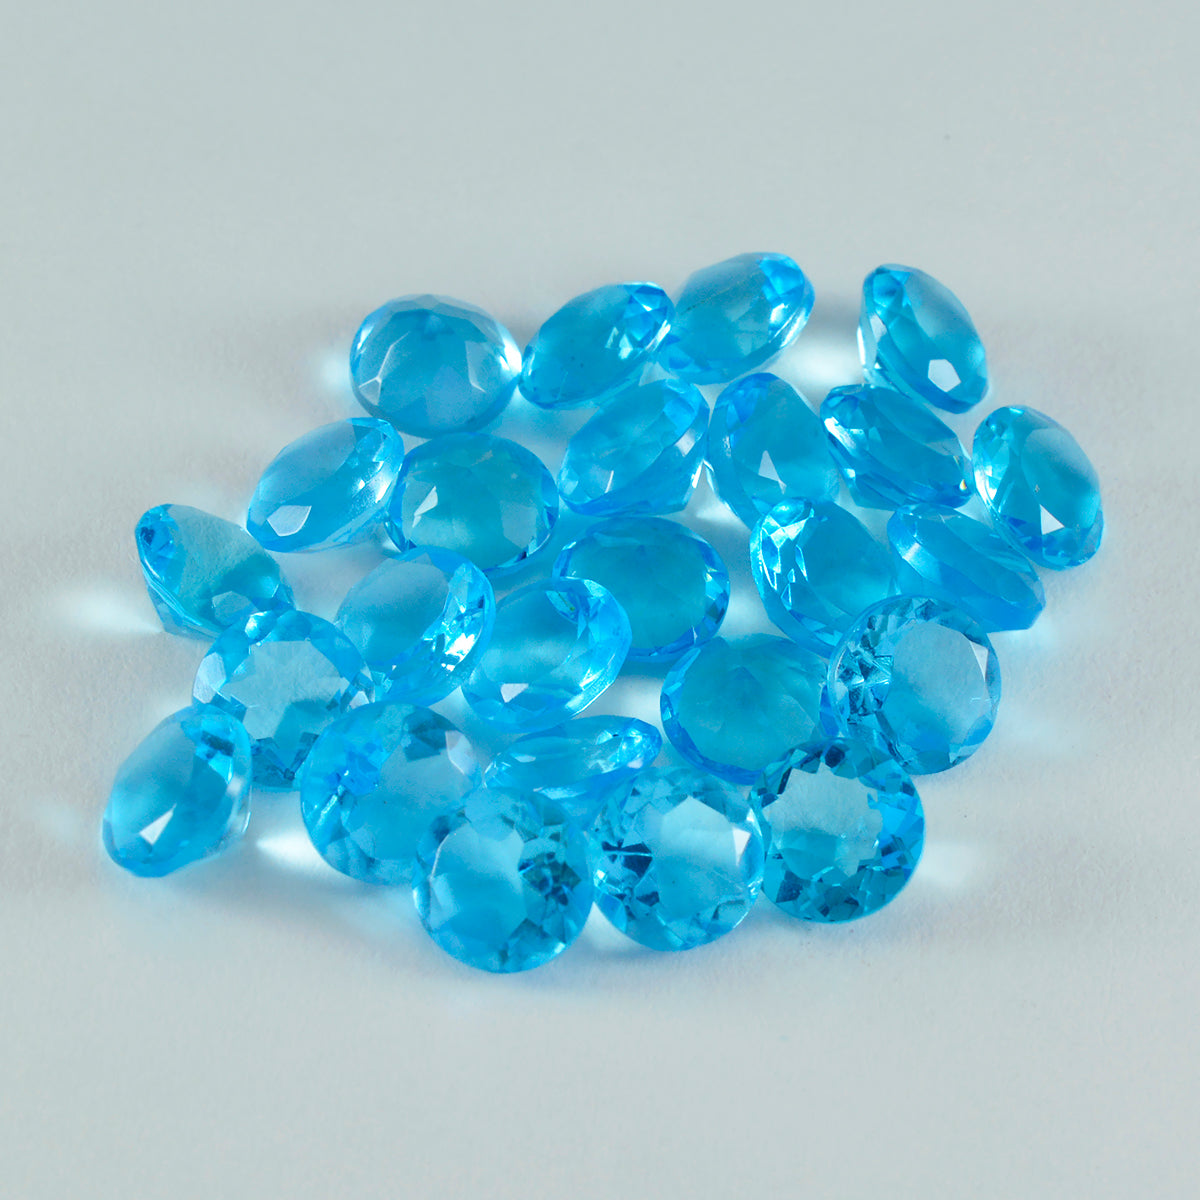 riyogems 1pc ブルー トパーズ CZ ファセット 6x6 mm ラウンド形状の美しさの品質ルース宝石